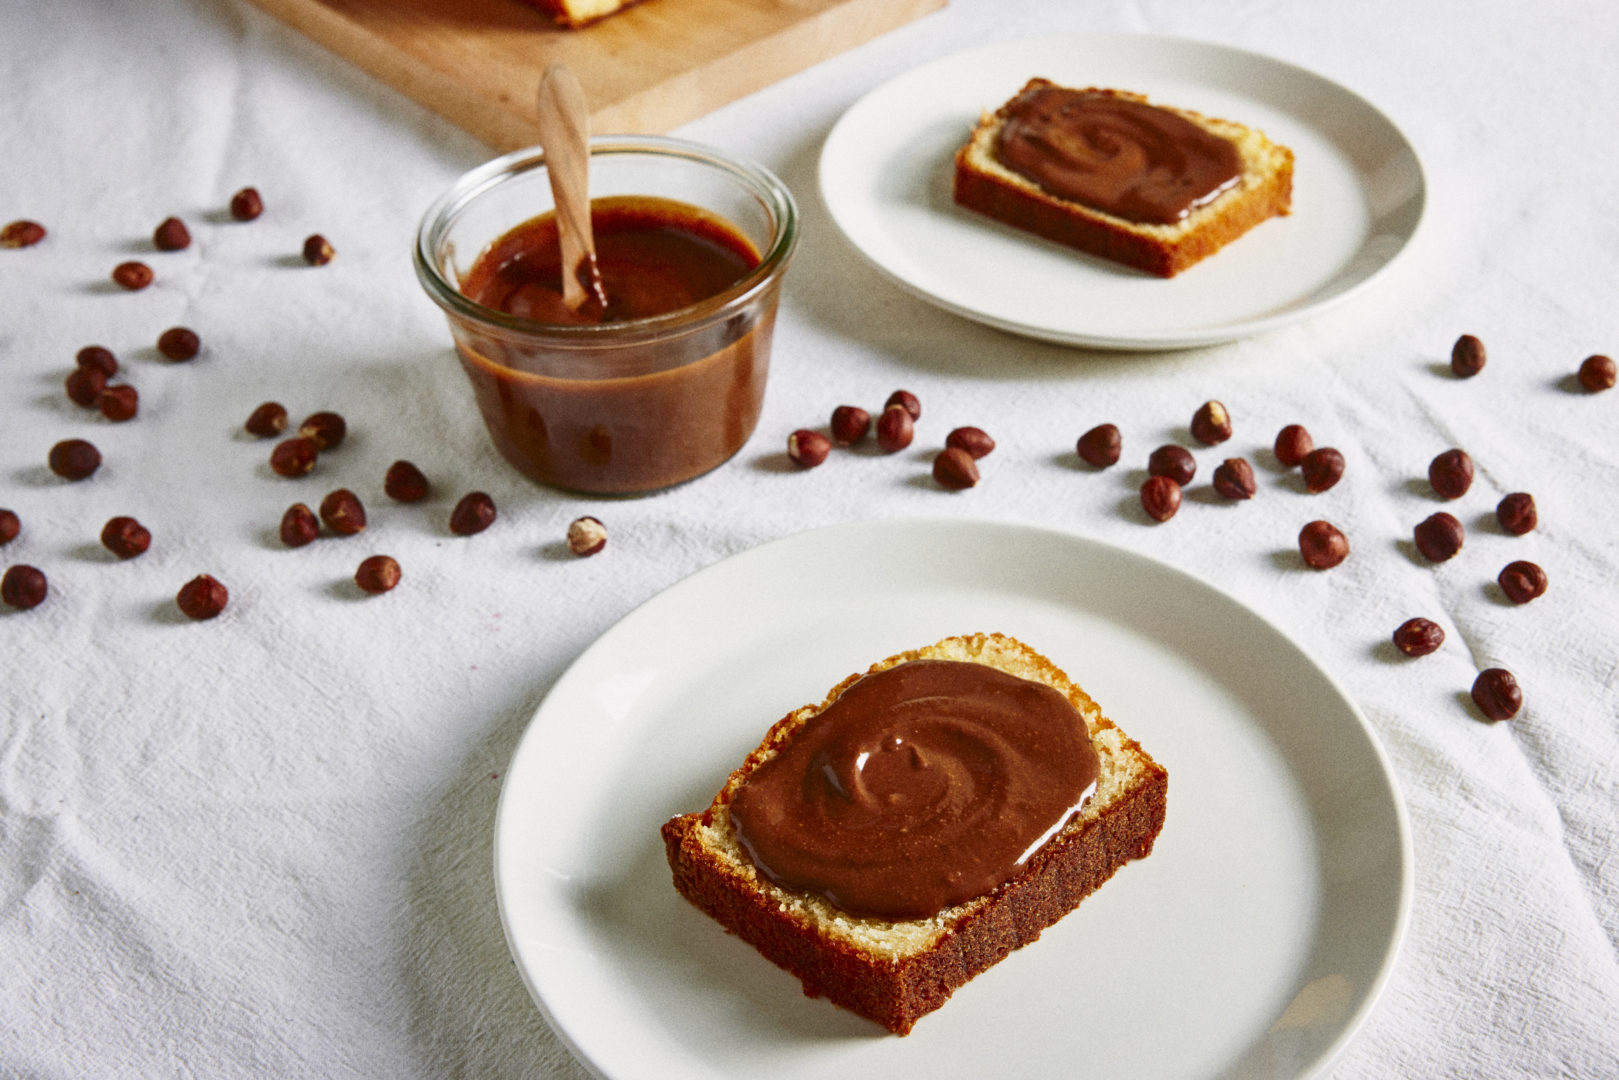 Receita de nutella caseira: o creme de avelã marrom está em um copo transparente e em cima de uma fatia de bolo em um prato branco sobre a mesa soberta de gotas de chocolate.